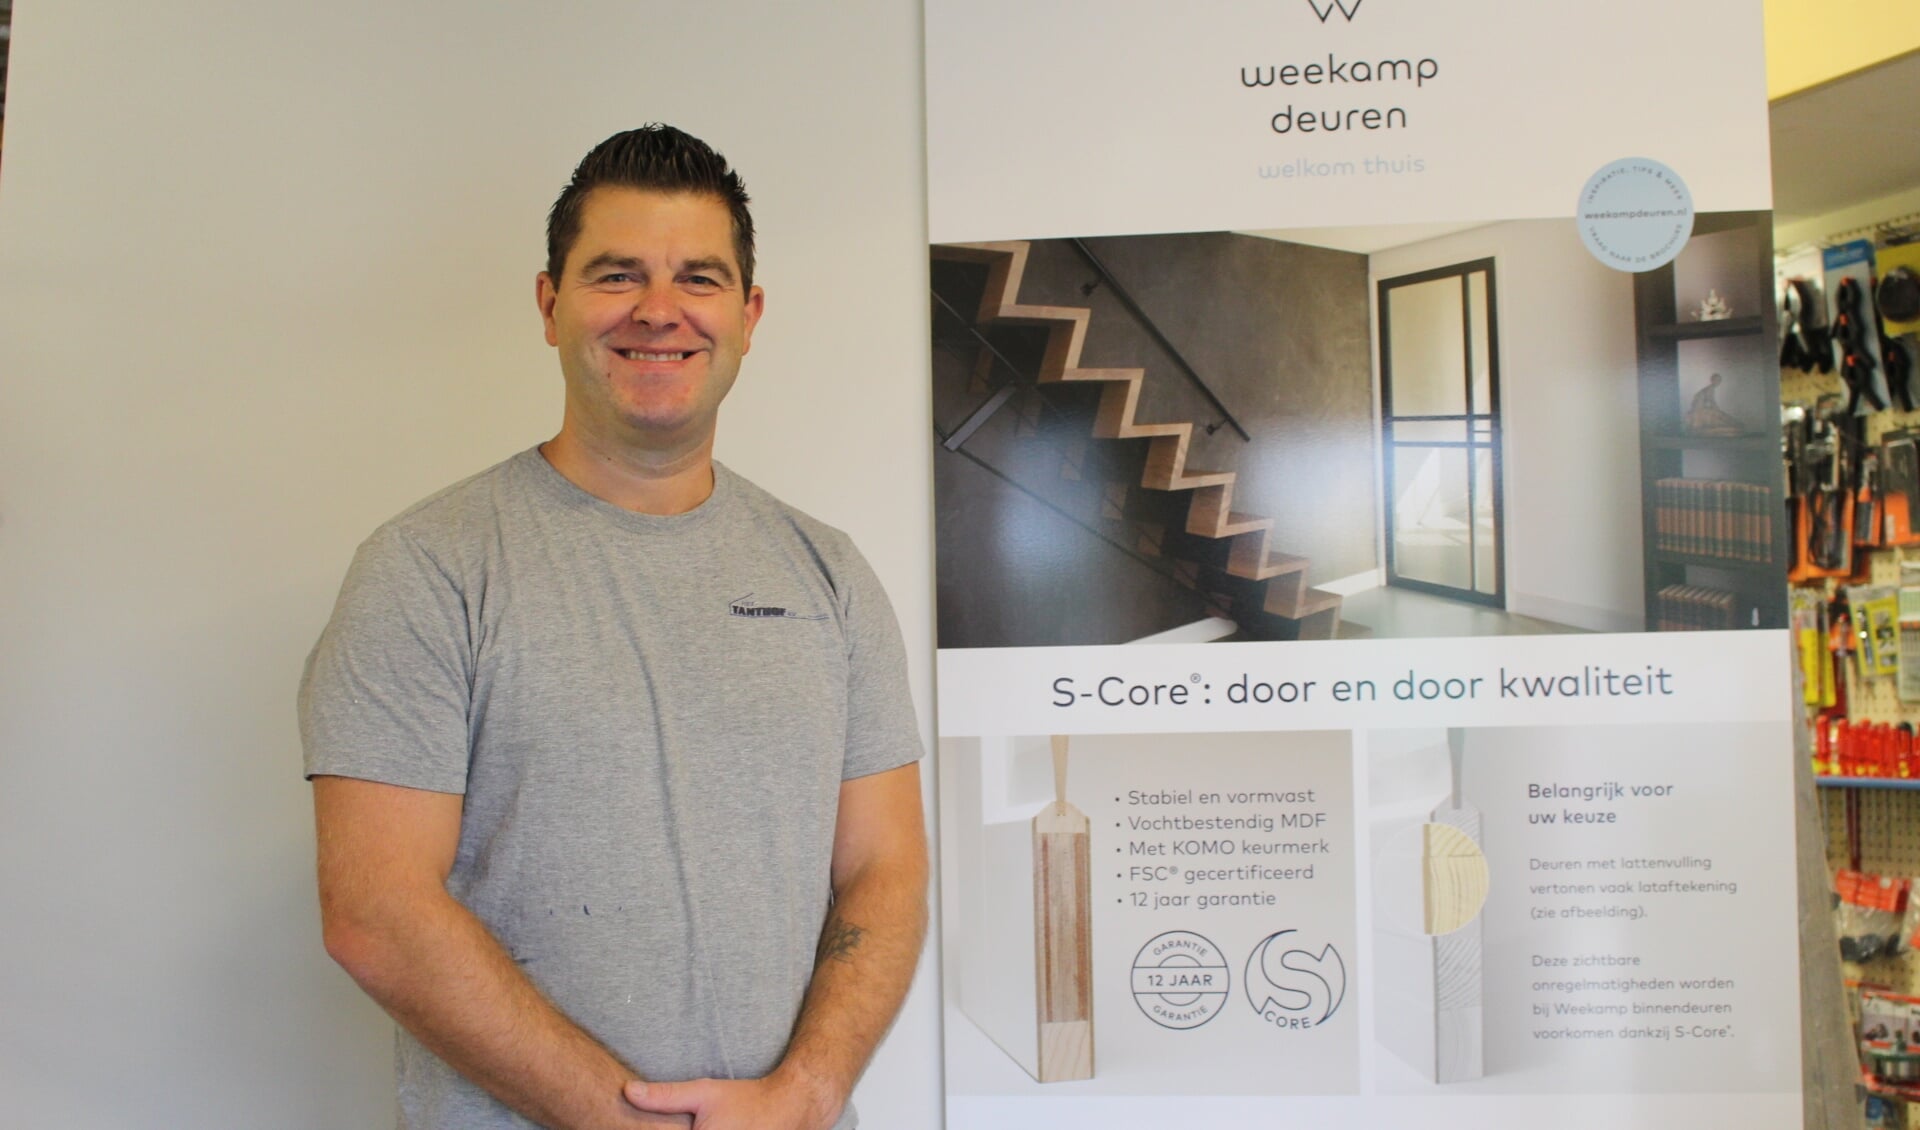 Een mooie deur is een sieraad voor je huis, vindt Danny van der Nol. | Foto: EvE